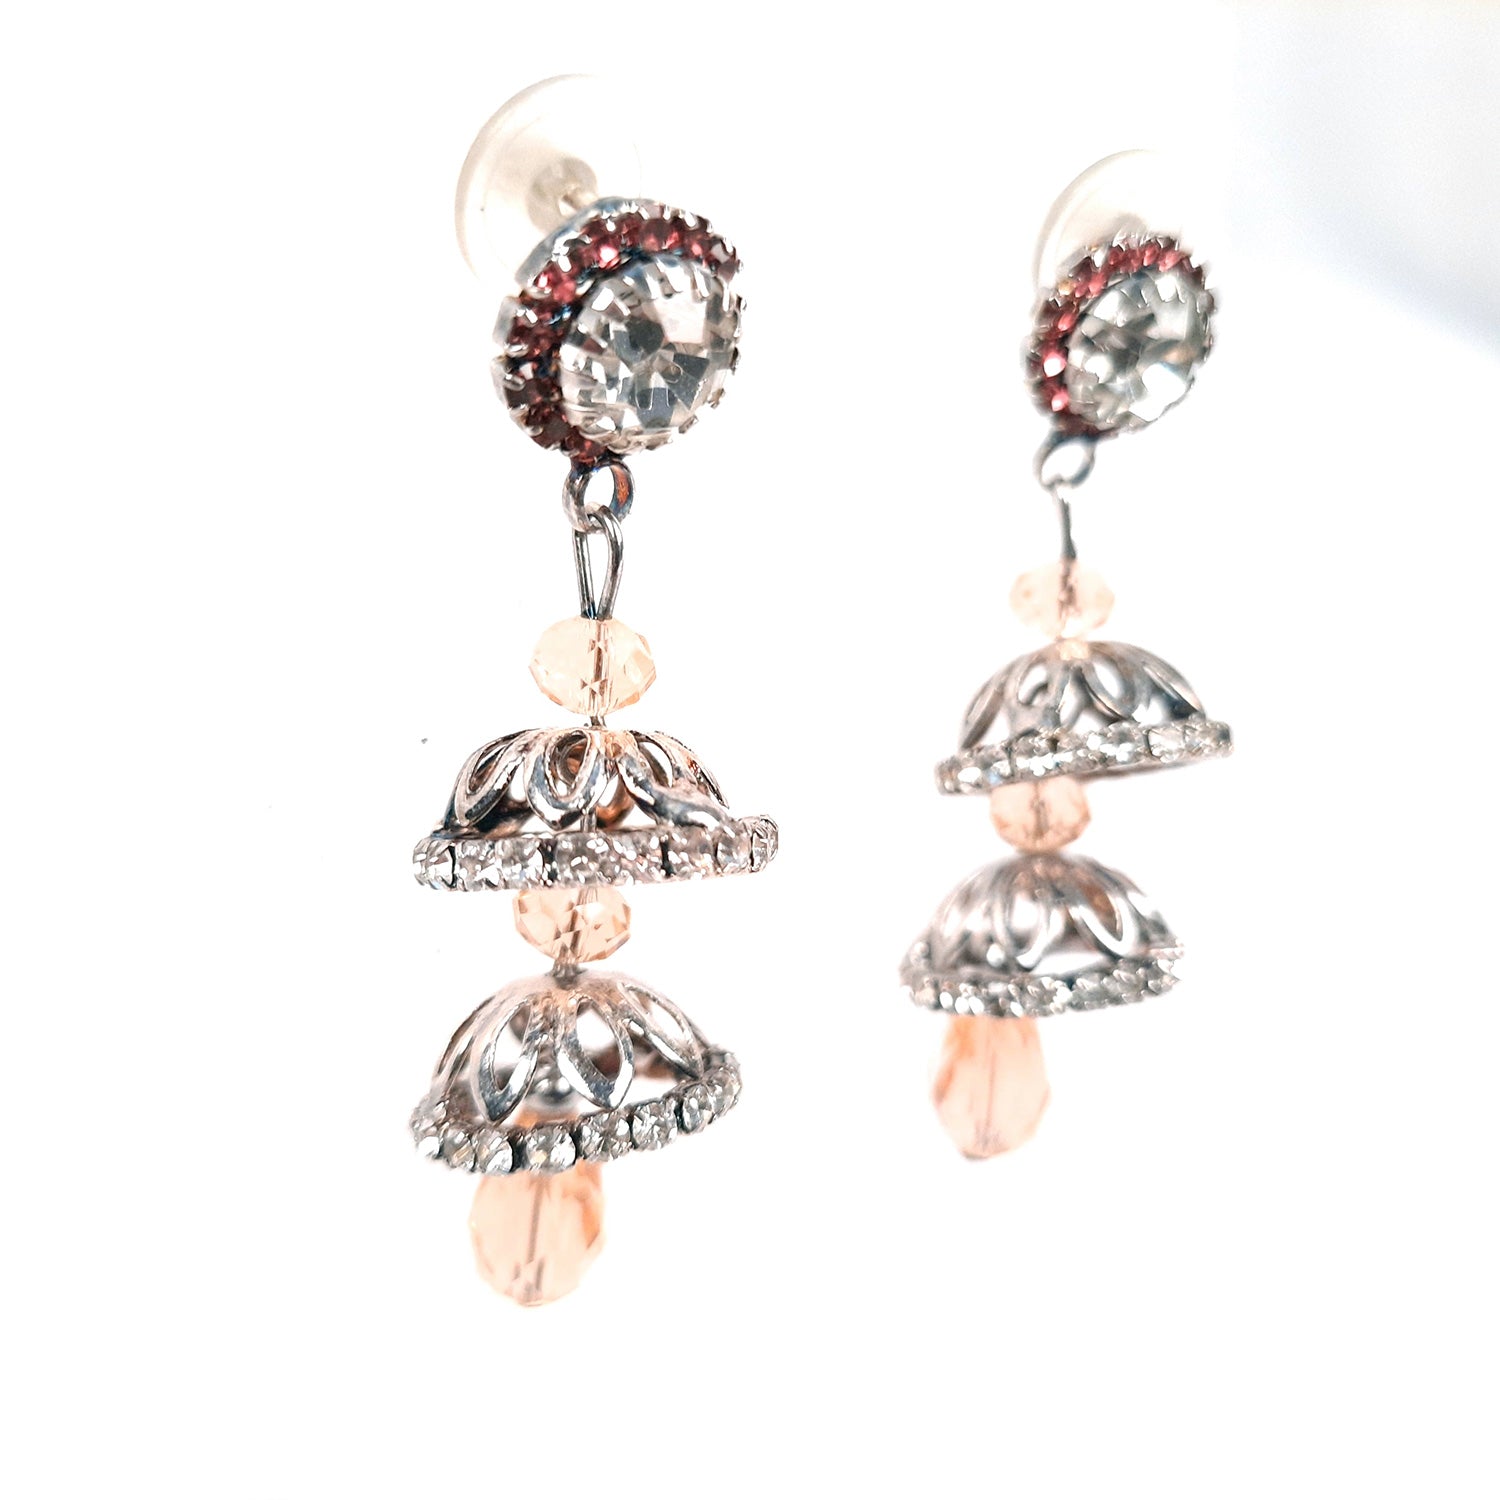 Earrings for Women & Girls | Drop Earrings | Latest Stylish Fashion Jewellery | Gift for Her - Apkamart